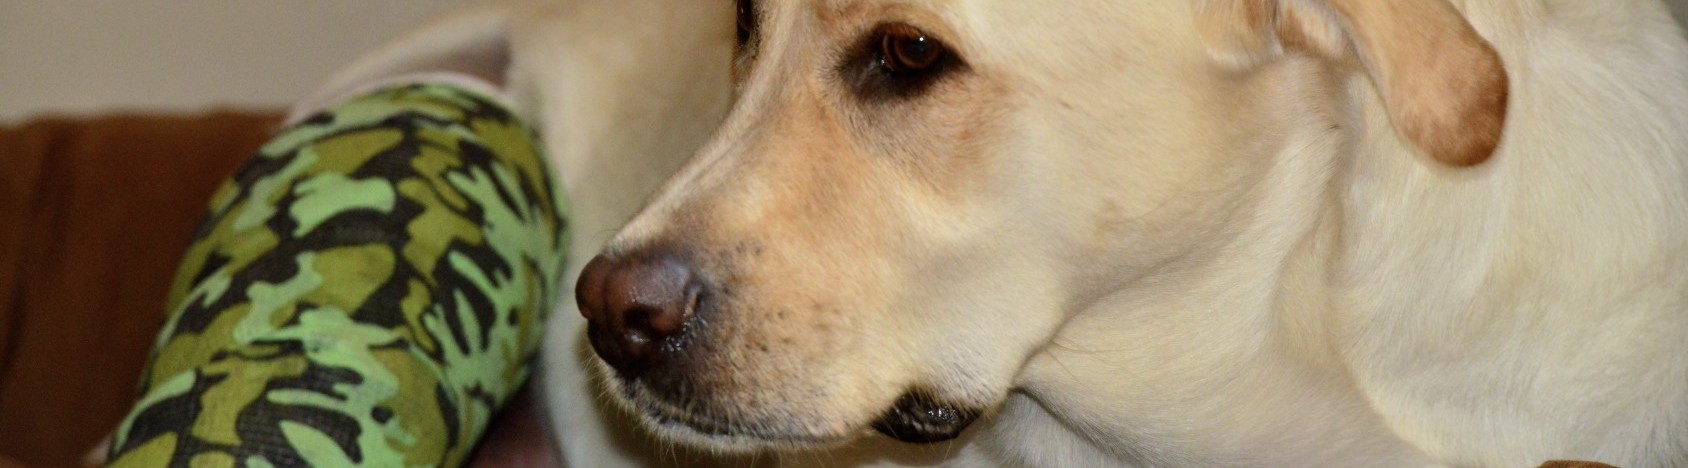 24 hour vet, a Labrador dog